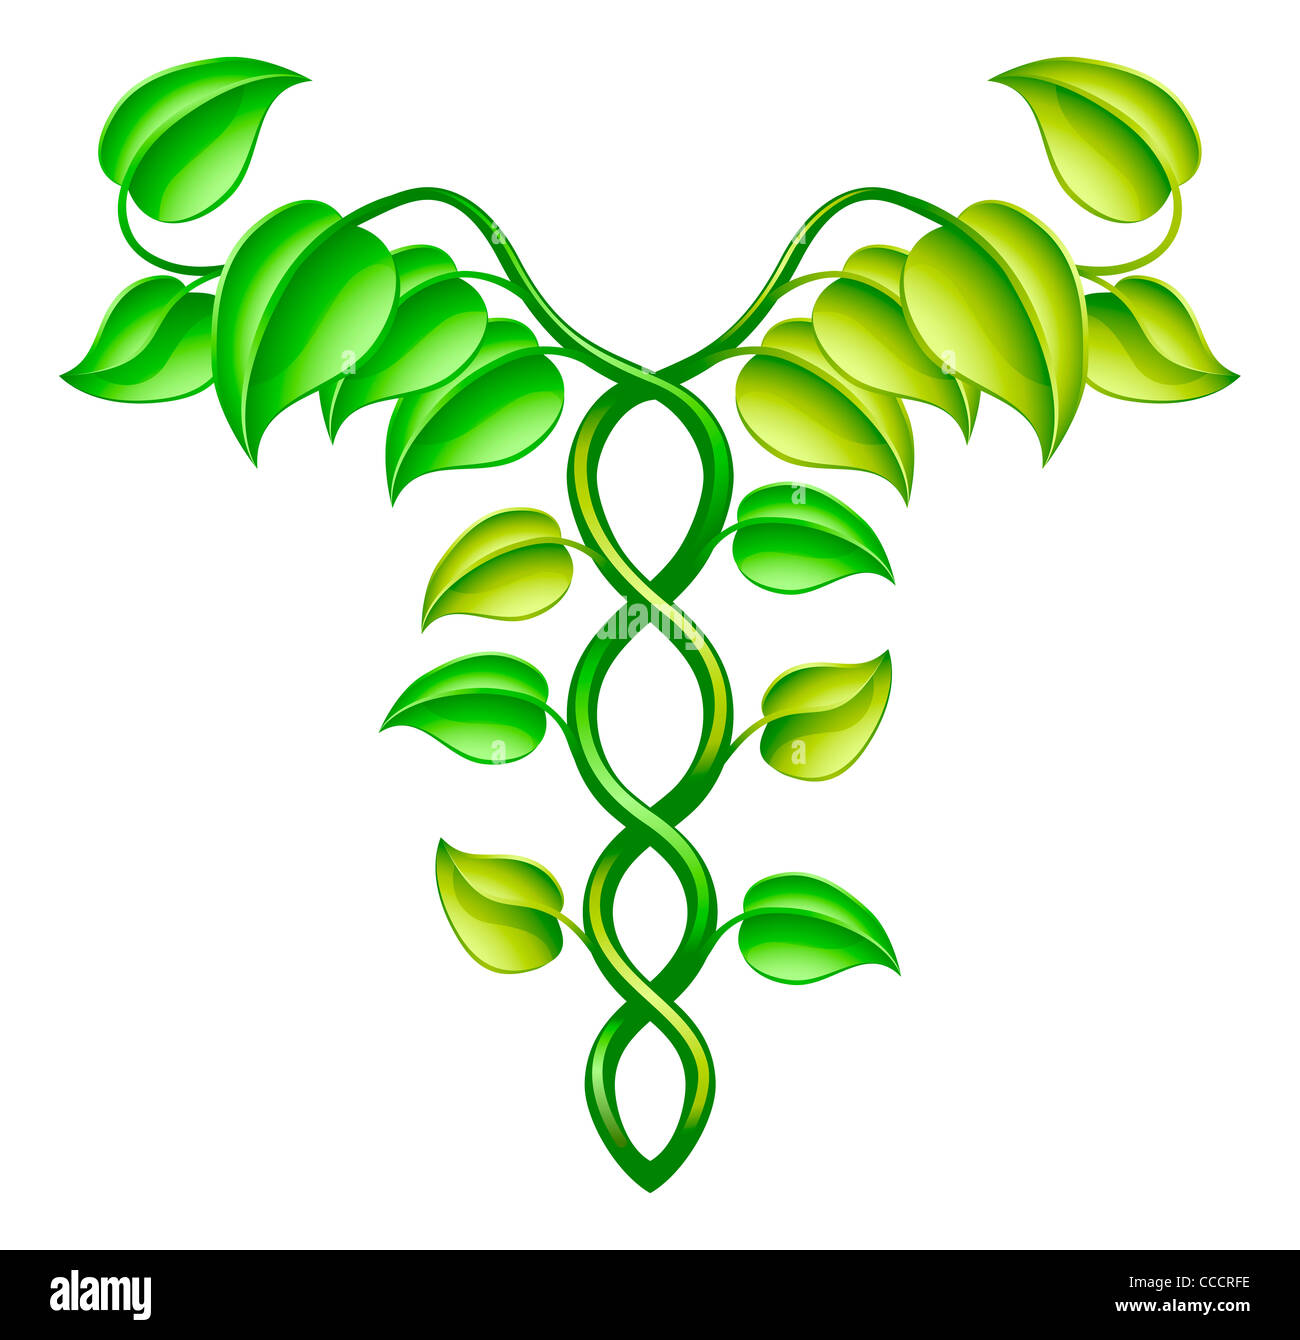 Natürliche oder alternative Medizin-Konzept der zwei Reben in einem Hermesstab Stil miteinander verflochten. Stockfoto